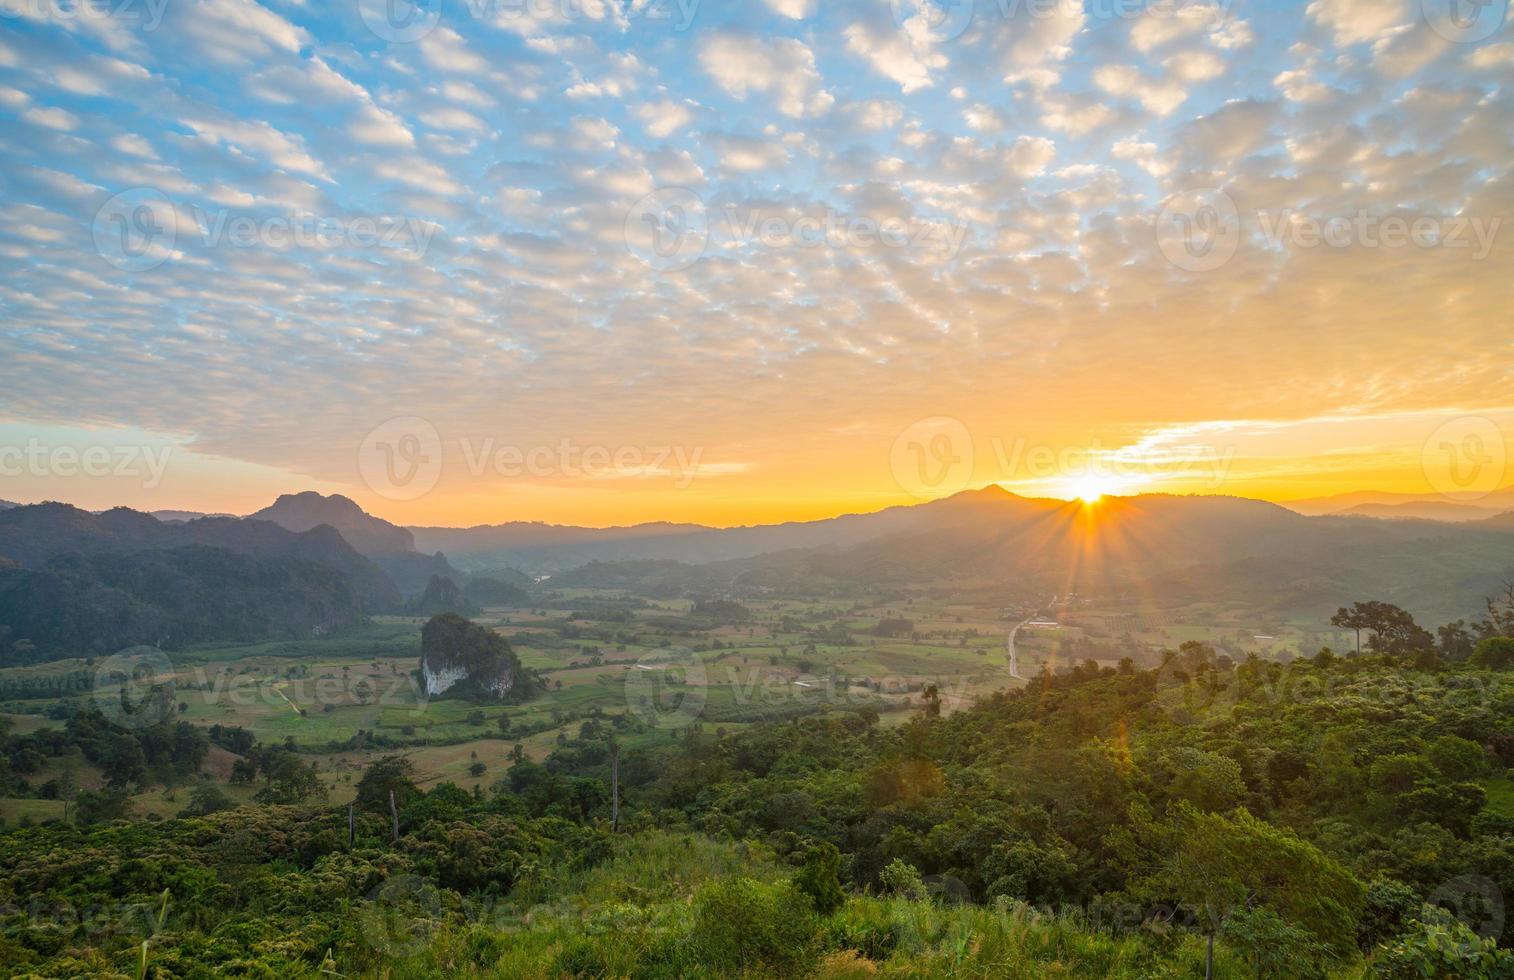 el paisaje del parque forestal phu lung ka durante el amanecer ubicado en la provincia de phayao en tailandia. foto